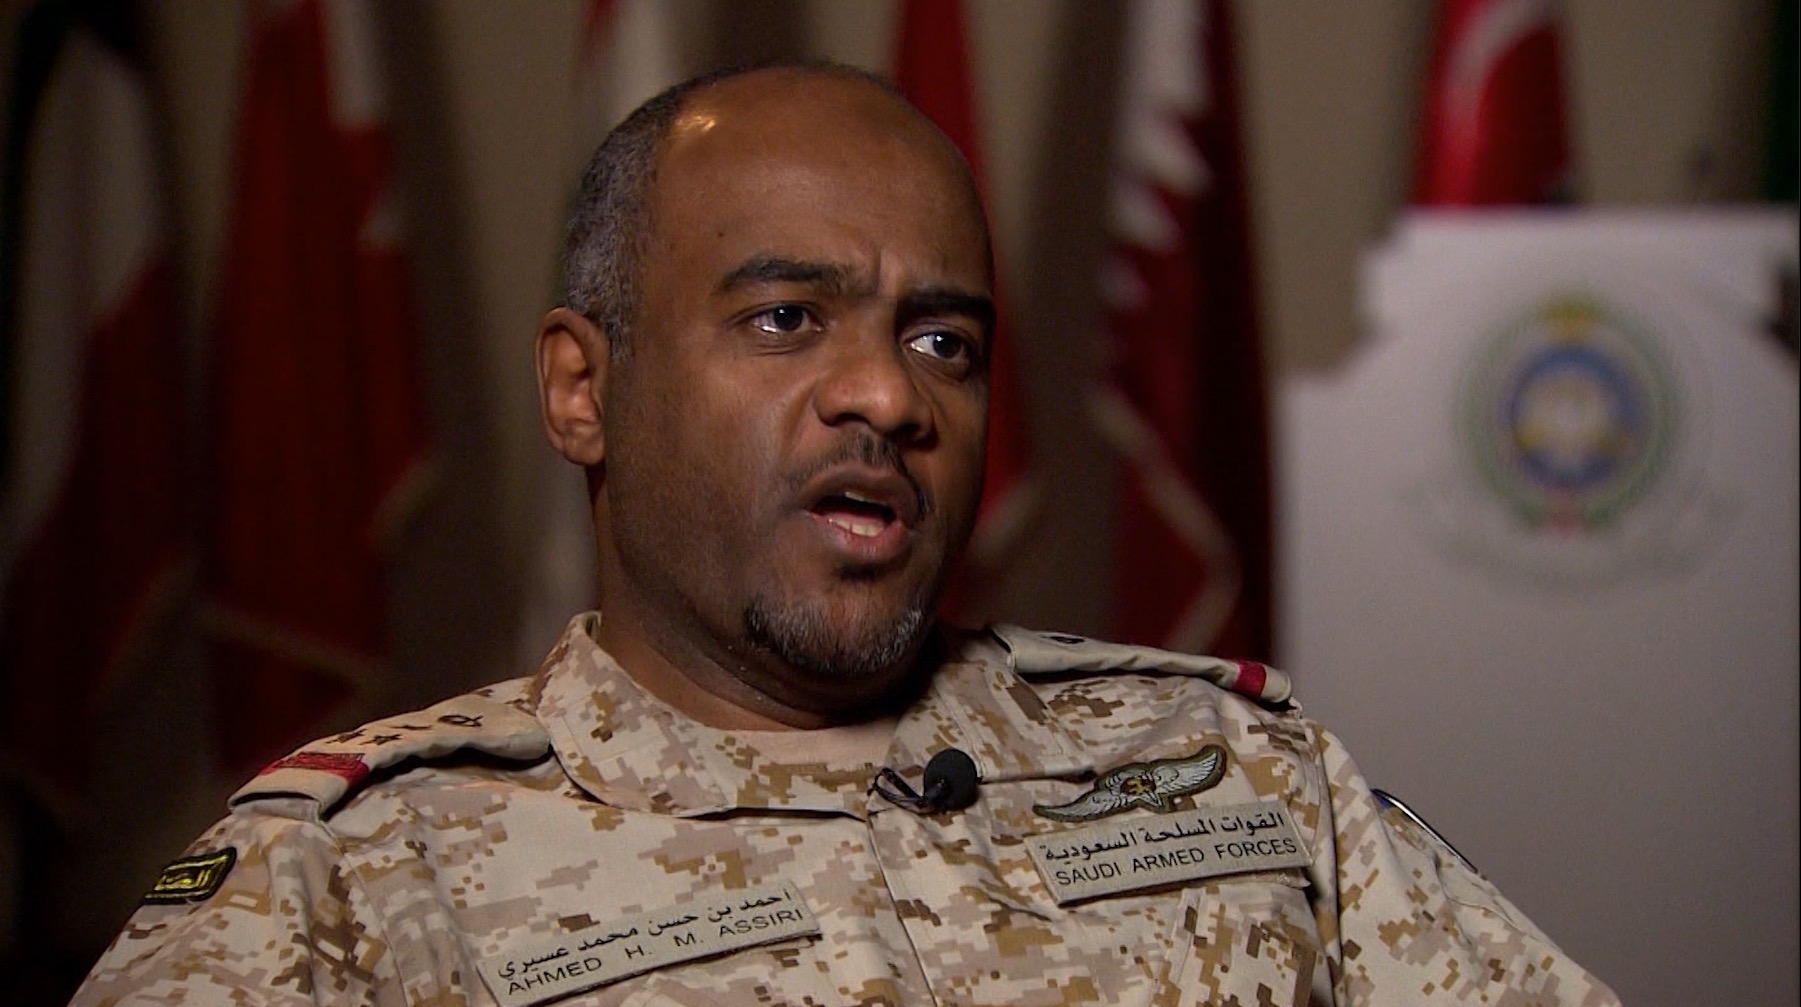 عسيري: السعودية مستعدة للمشاركة بقوات برية مع التحالف الدولي ضد داعش في سوريا - CNNArabic.com